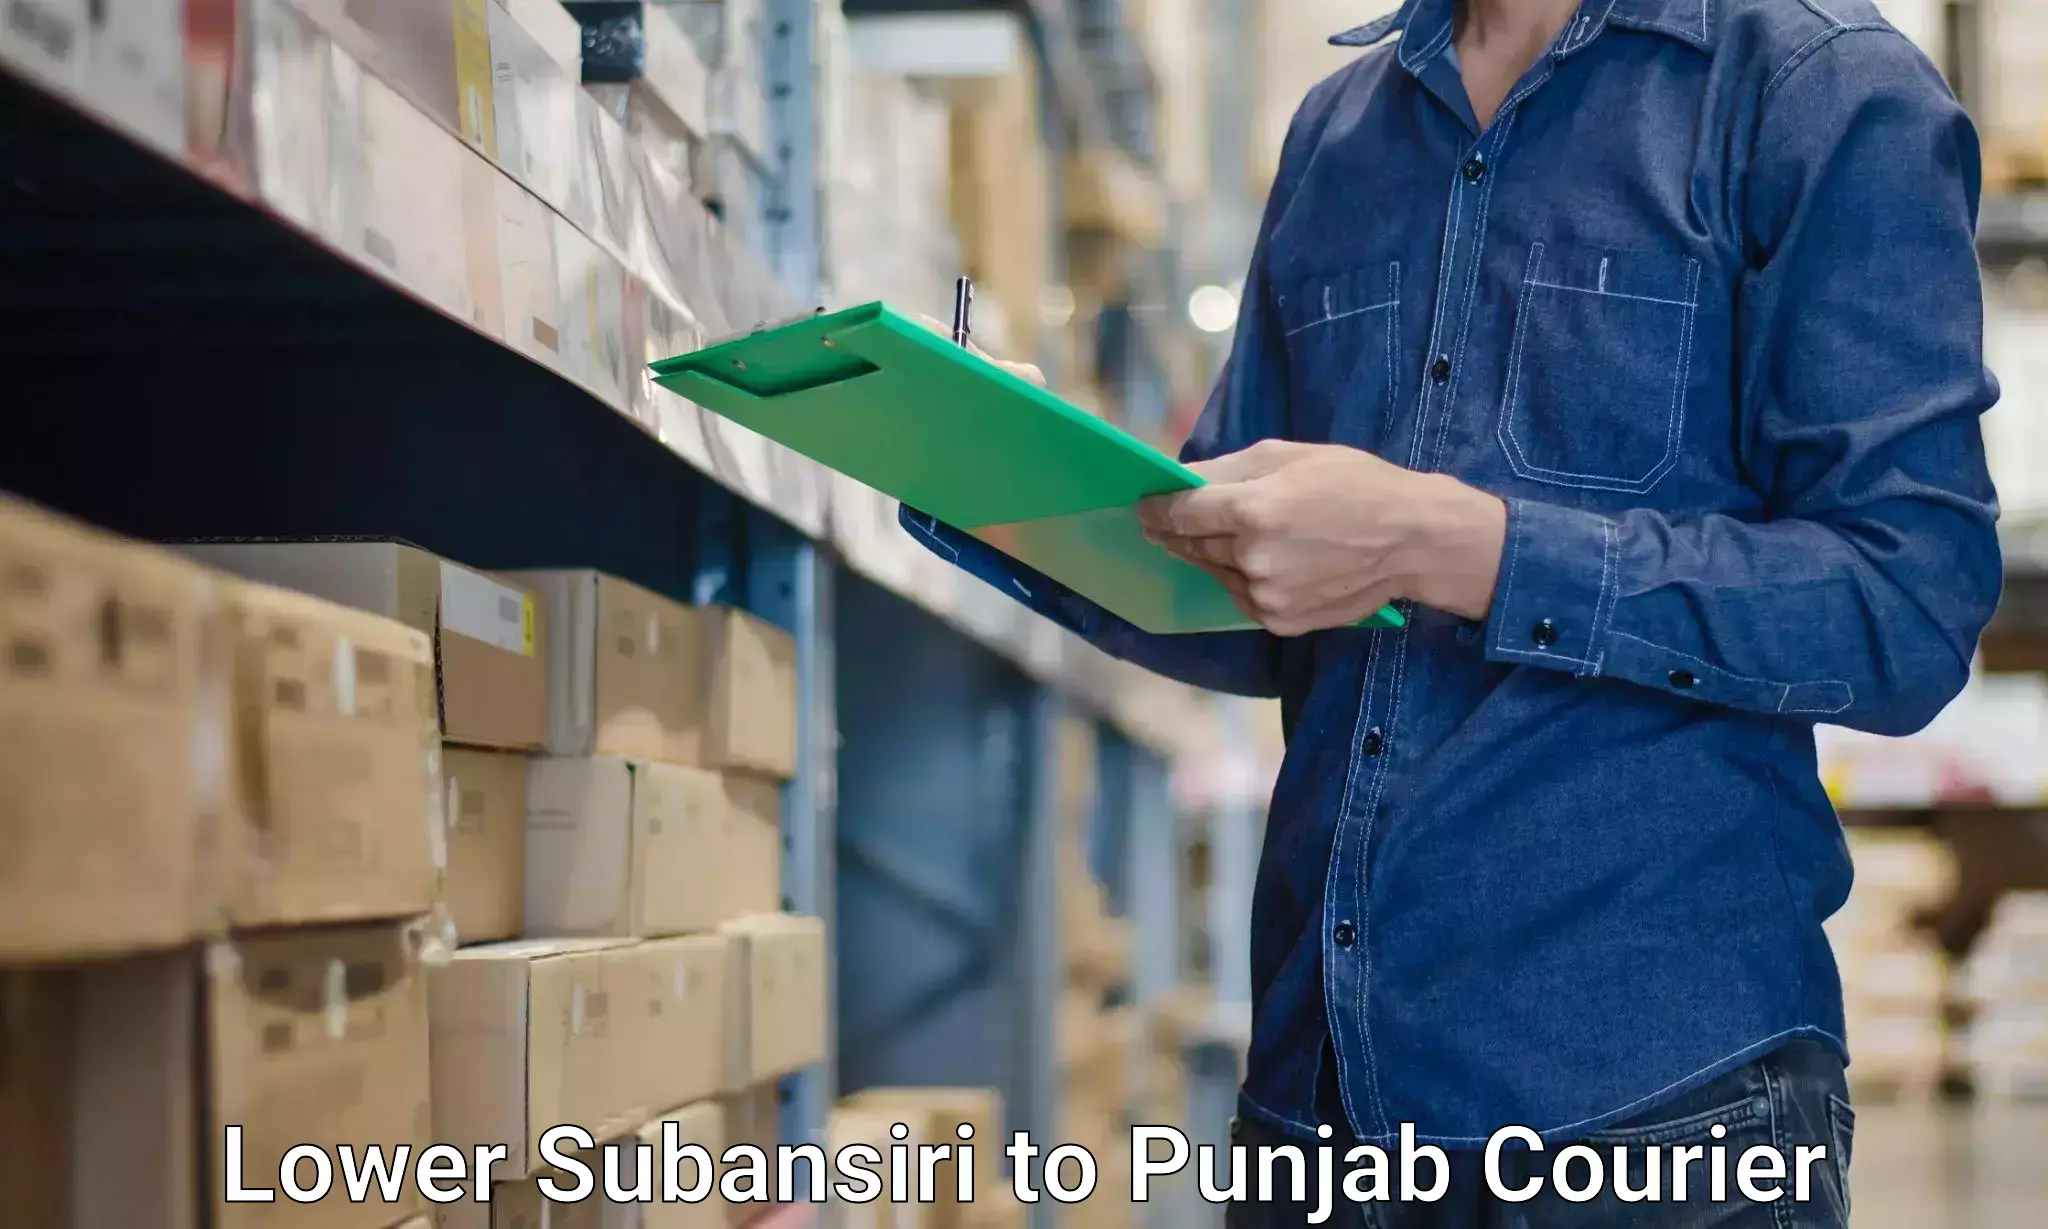 Furniture transport services Lower Subansiri to Punjab